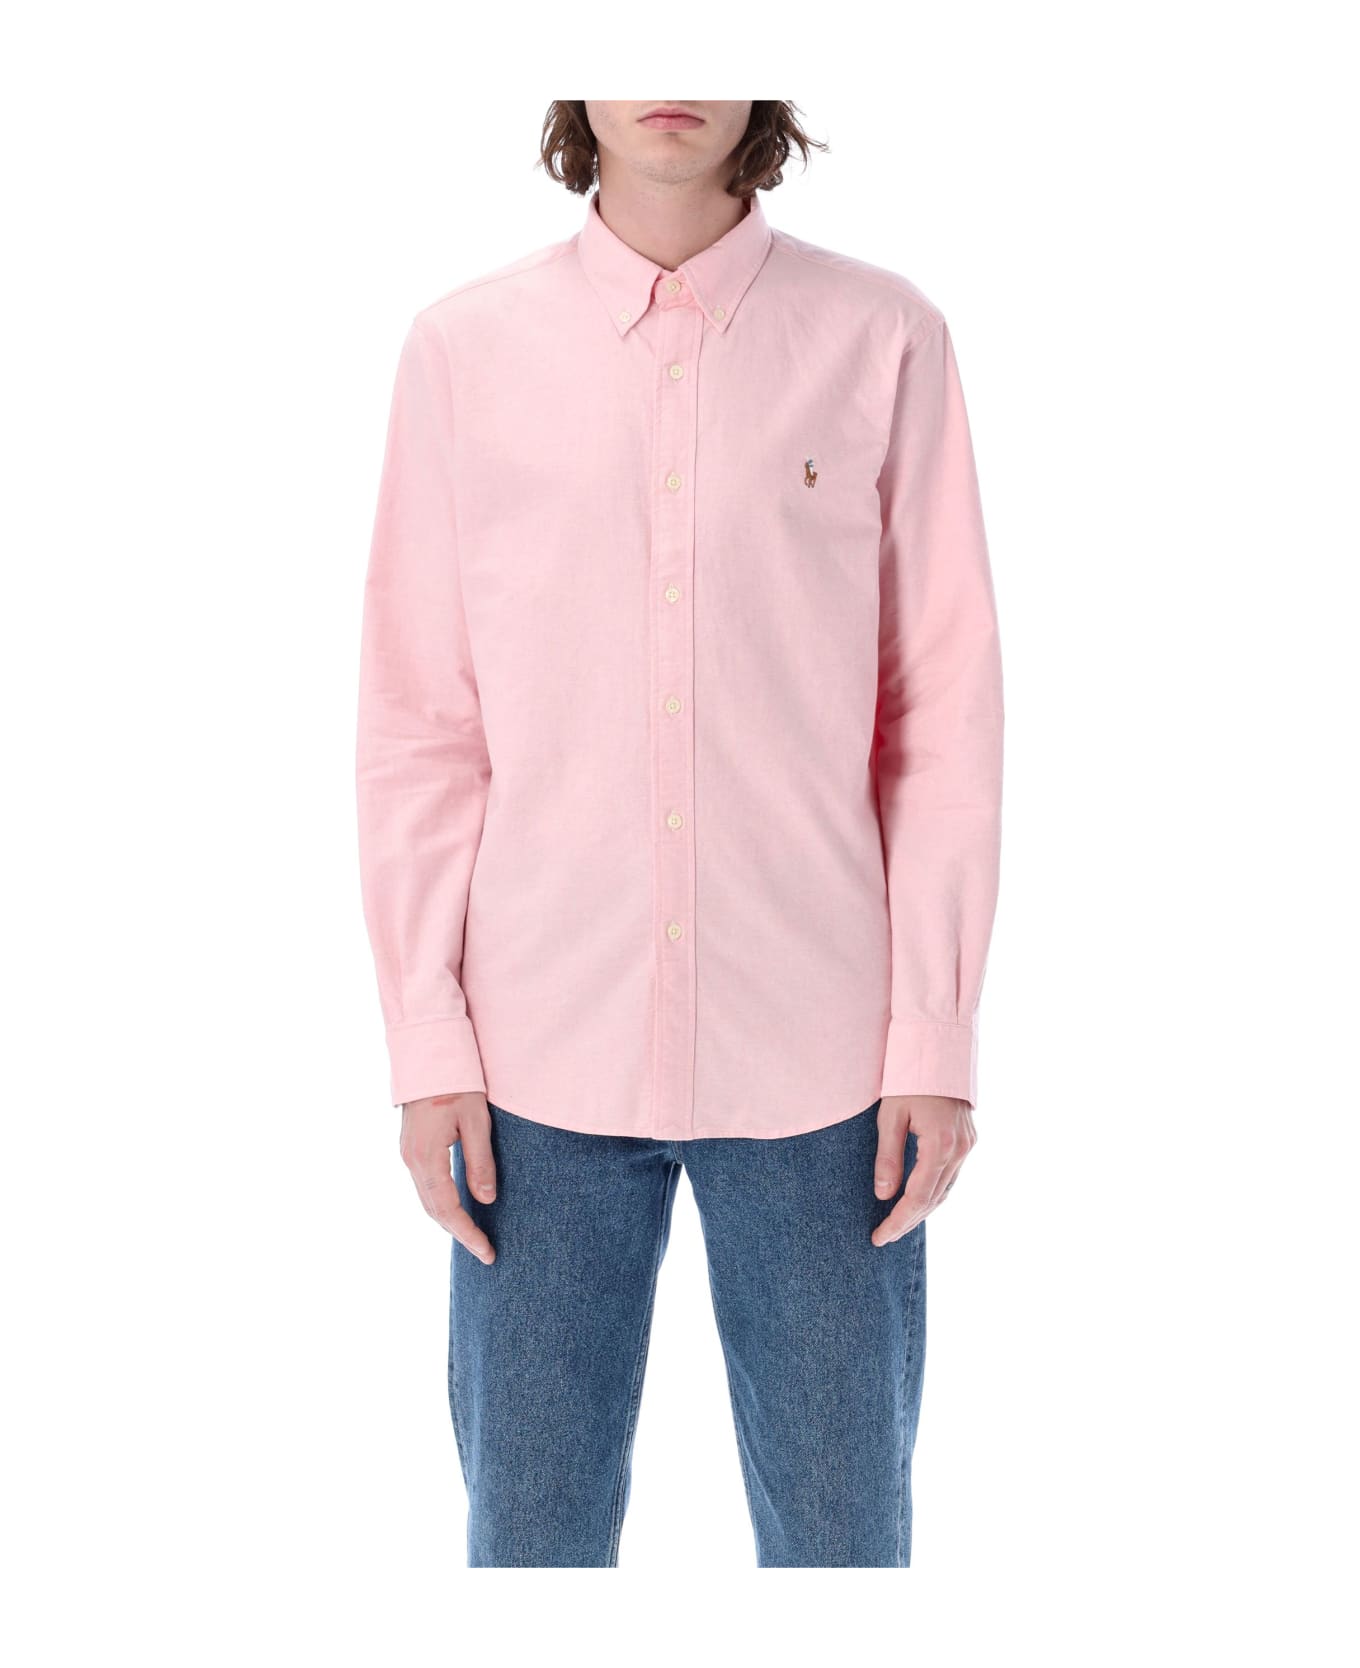 Polo Ralph Lauren Custom Fit Shirt - PINK